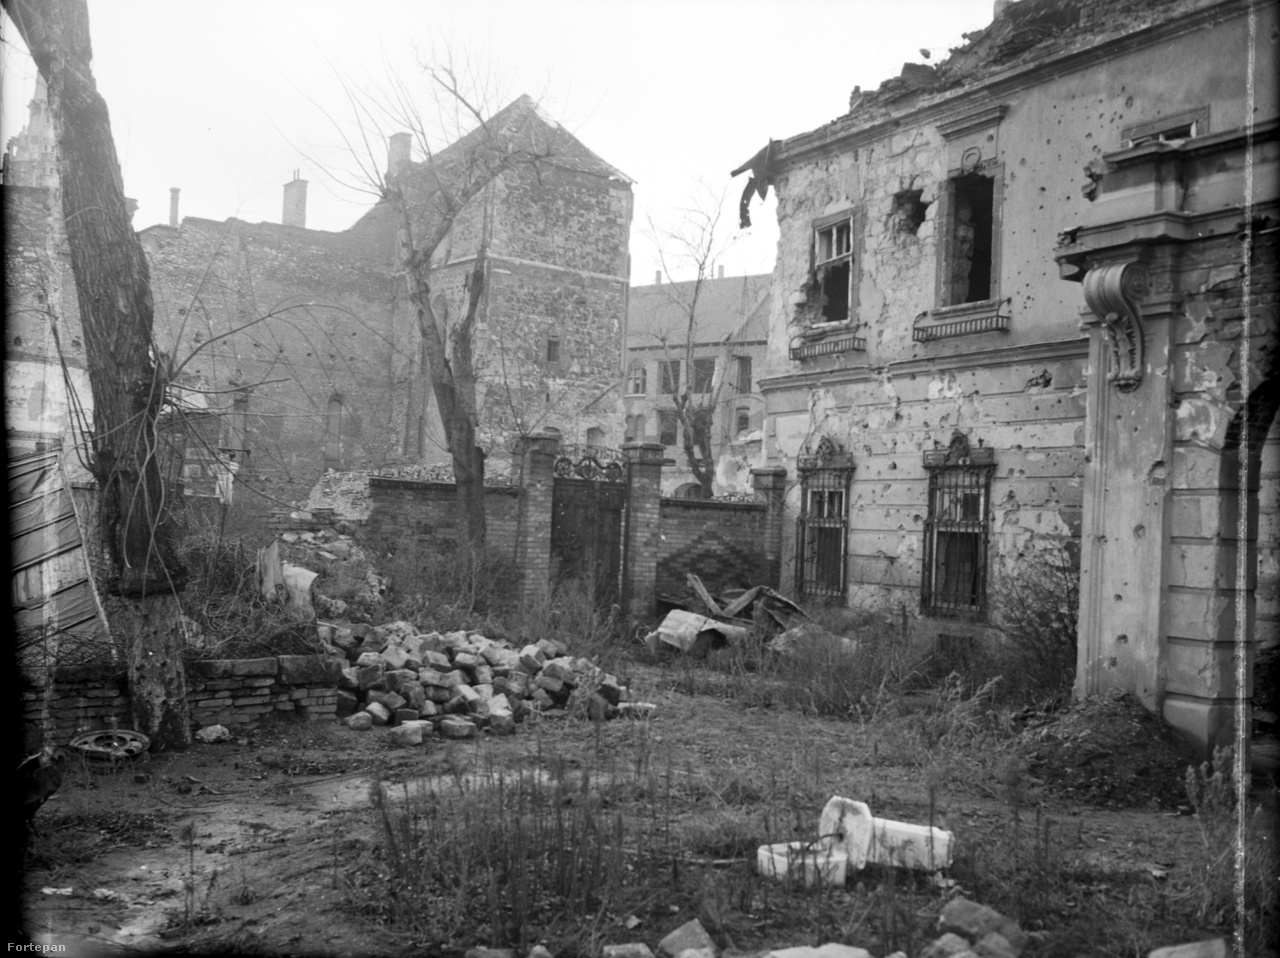 Ami megmaradt. A korábbi brit követség kertje 1949-ben&nbsp;Az „előtte-utána” fotópáron Lutz brutálisan dokumentálta a háború pusztítását.